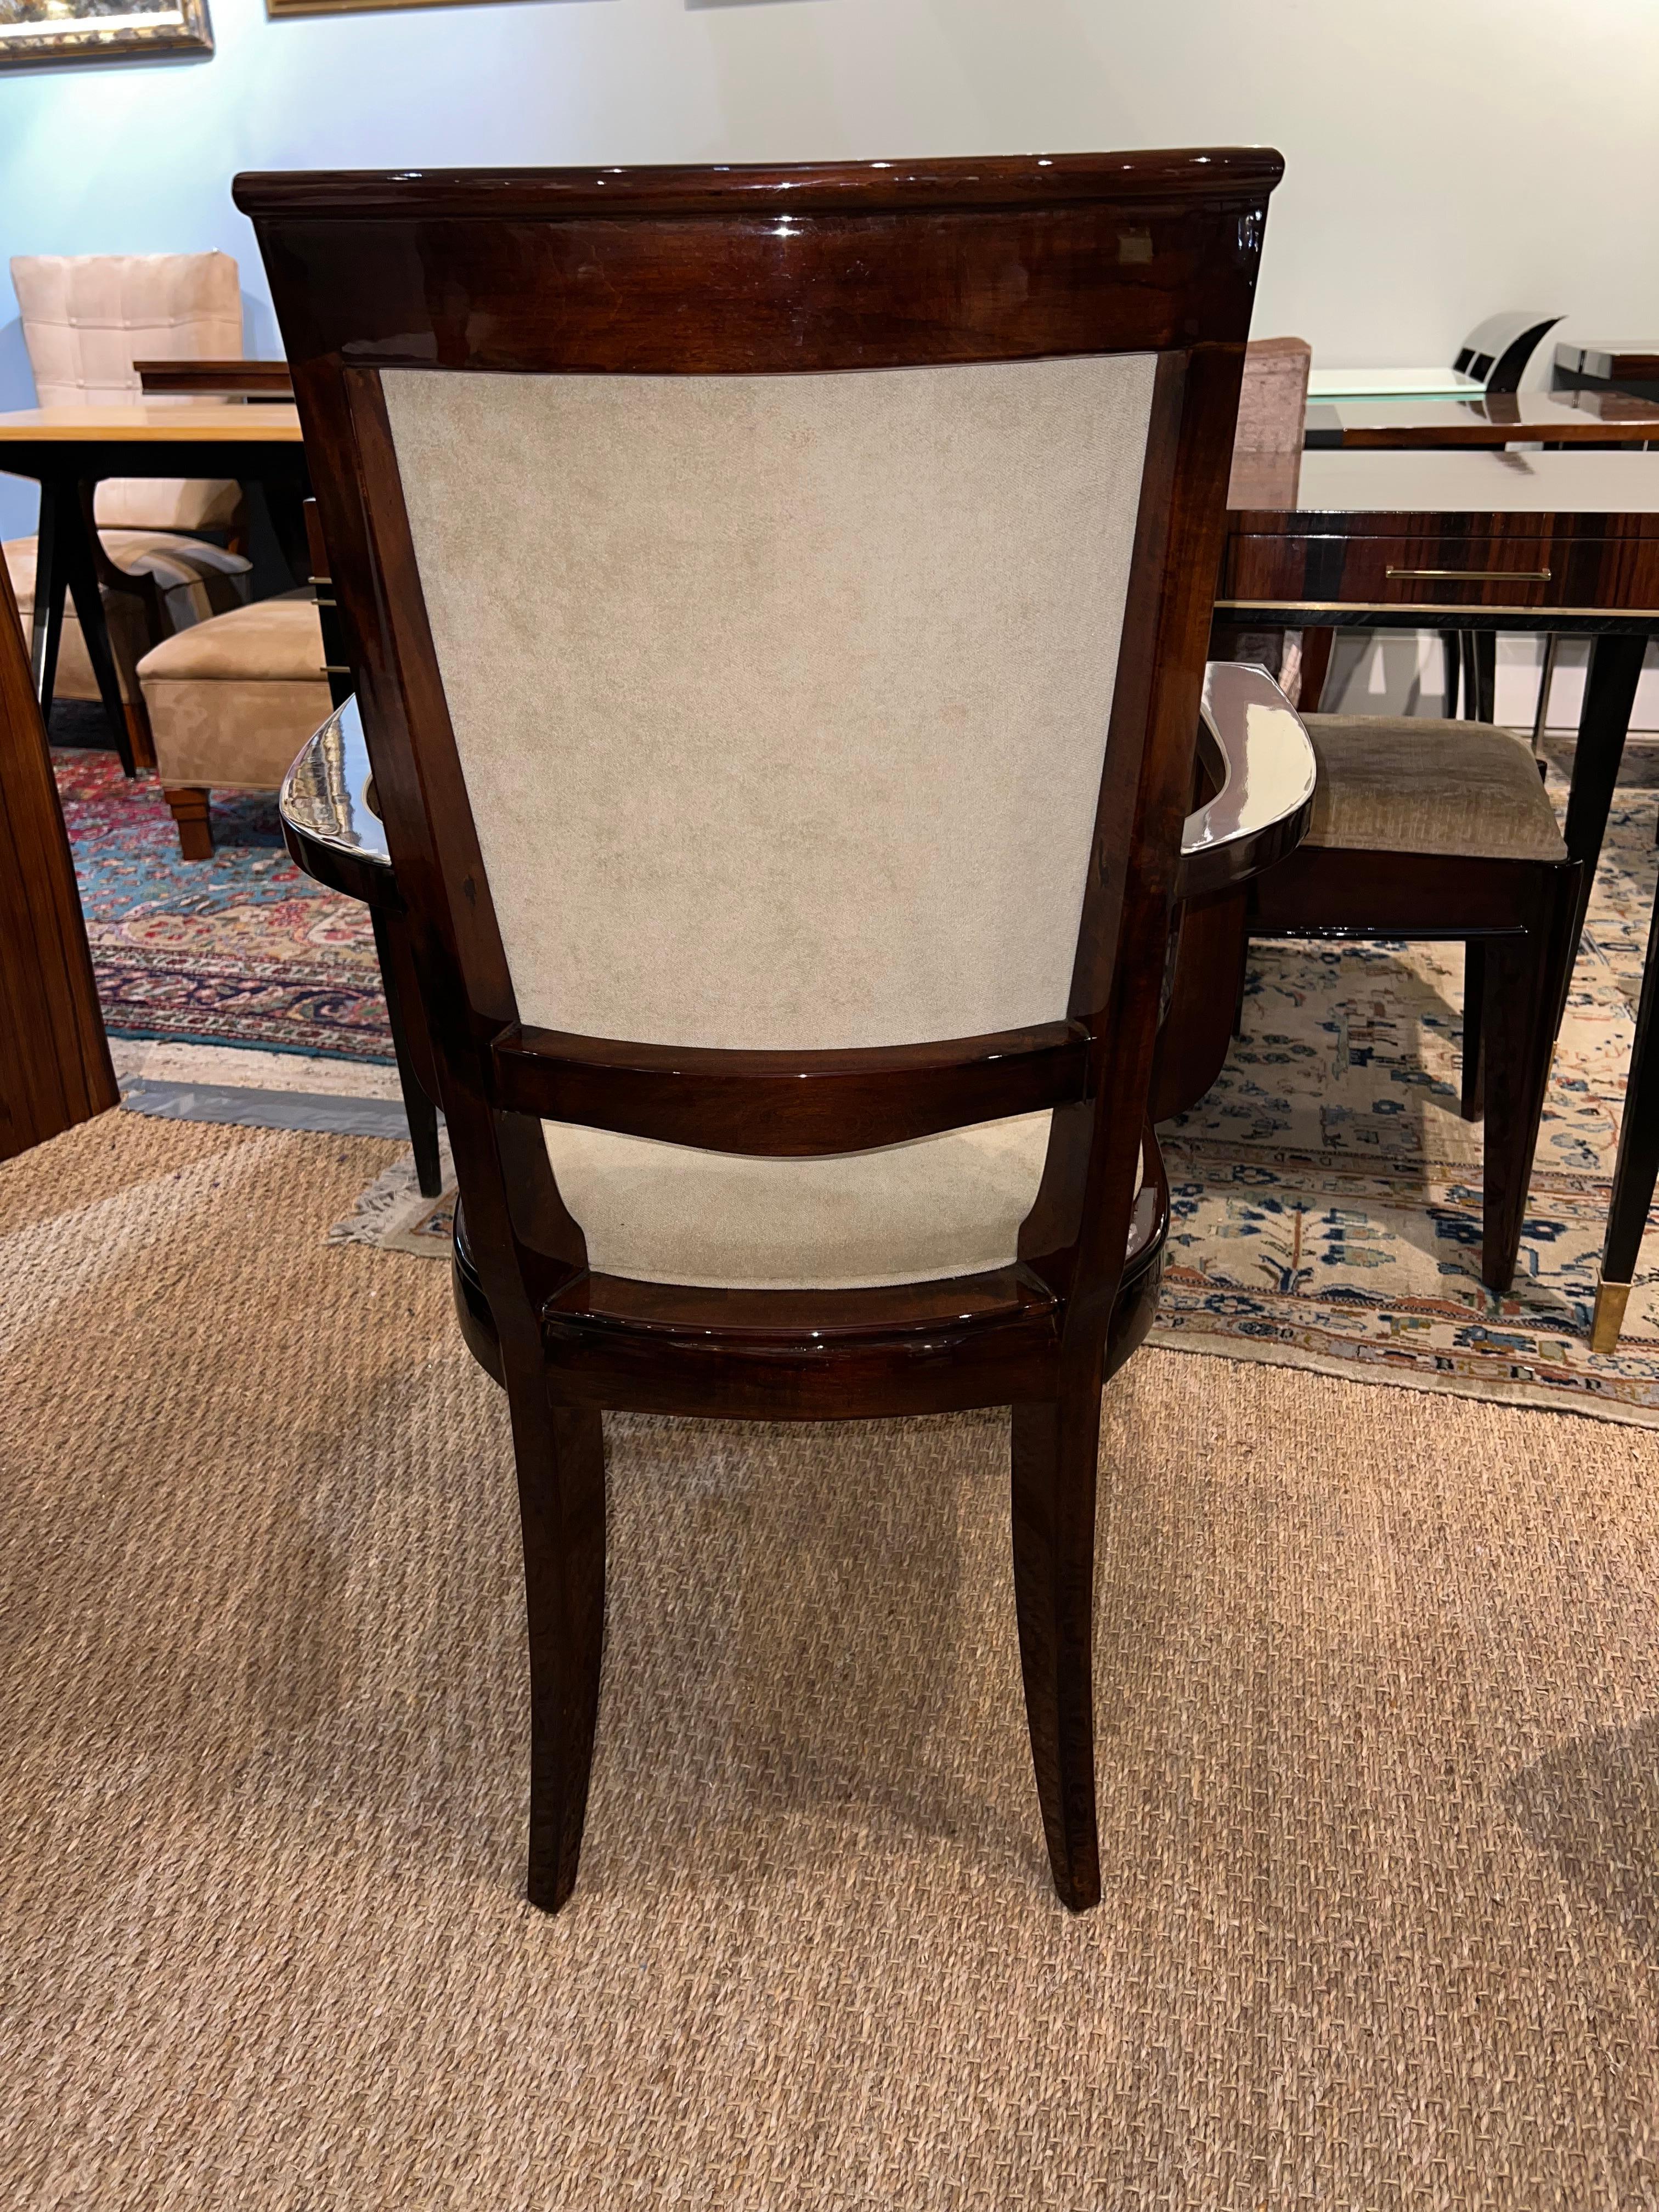 Schöner und bequemer französischer Art Deco Stuhl. Der Stuhl hat eine hohe Rückenlehne und 2 Armlehnen. Neu gepolstert mit hellbeigem Stoff und neu poliert. 

Der Zustand ist perfekt. Wiederhergestellt.
23,5 